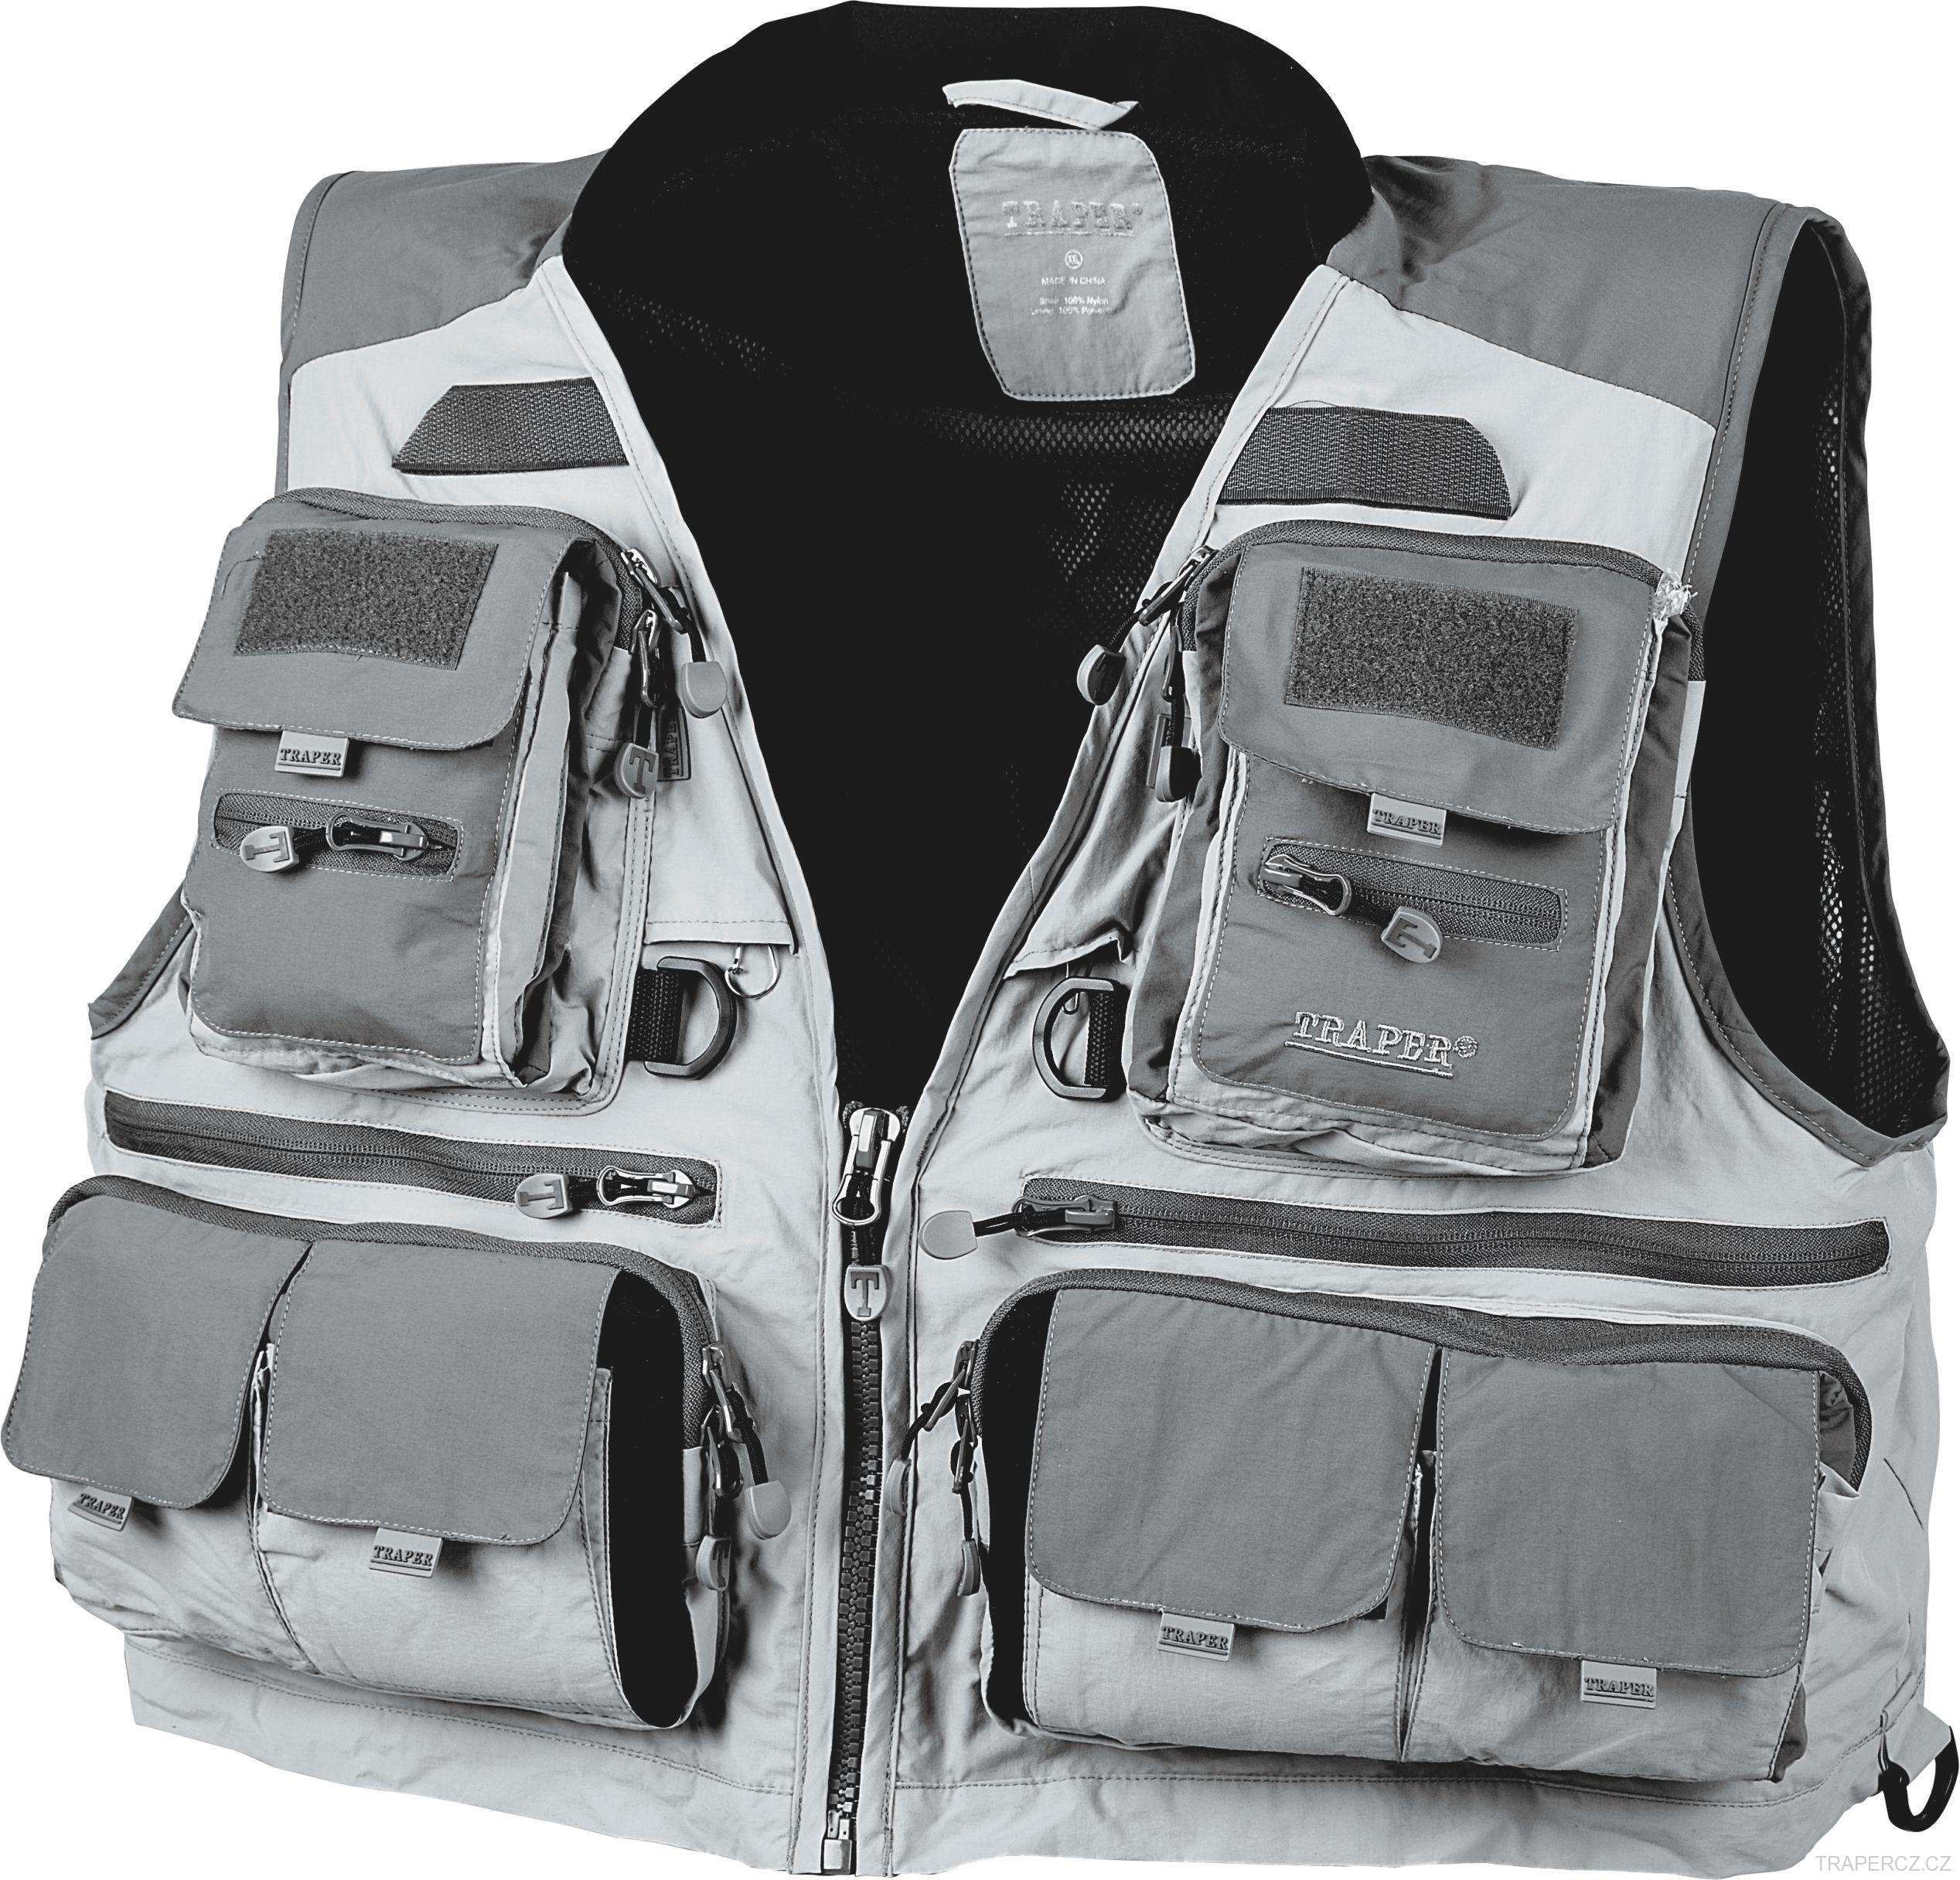 fitting Mariner command Muškařské vesty, rybářské vesty, vesty pro vláčkaře, vesty Simms | rybářské  vybavení pro muškaření, přívlač a oblečení do přírody